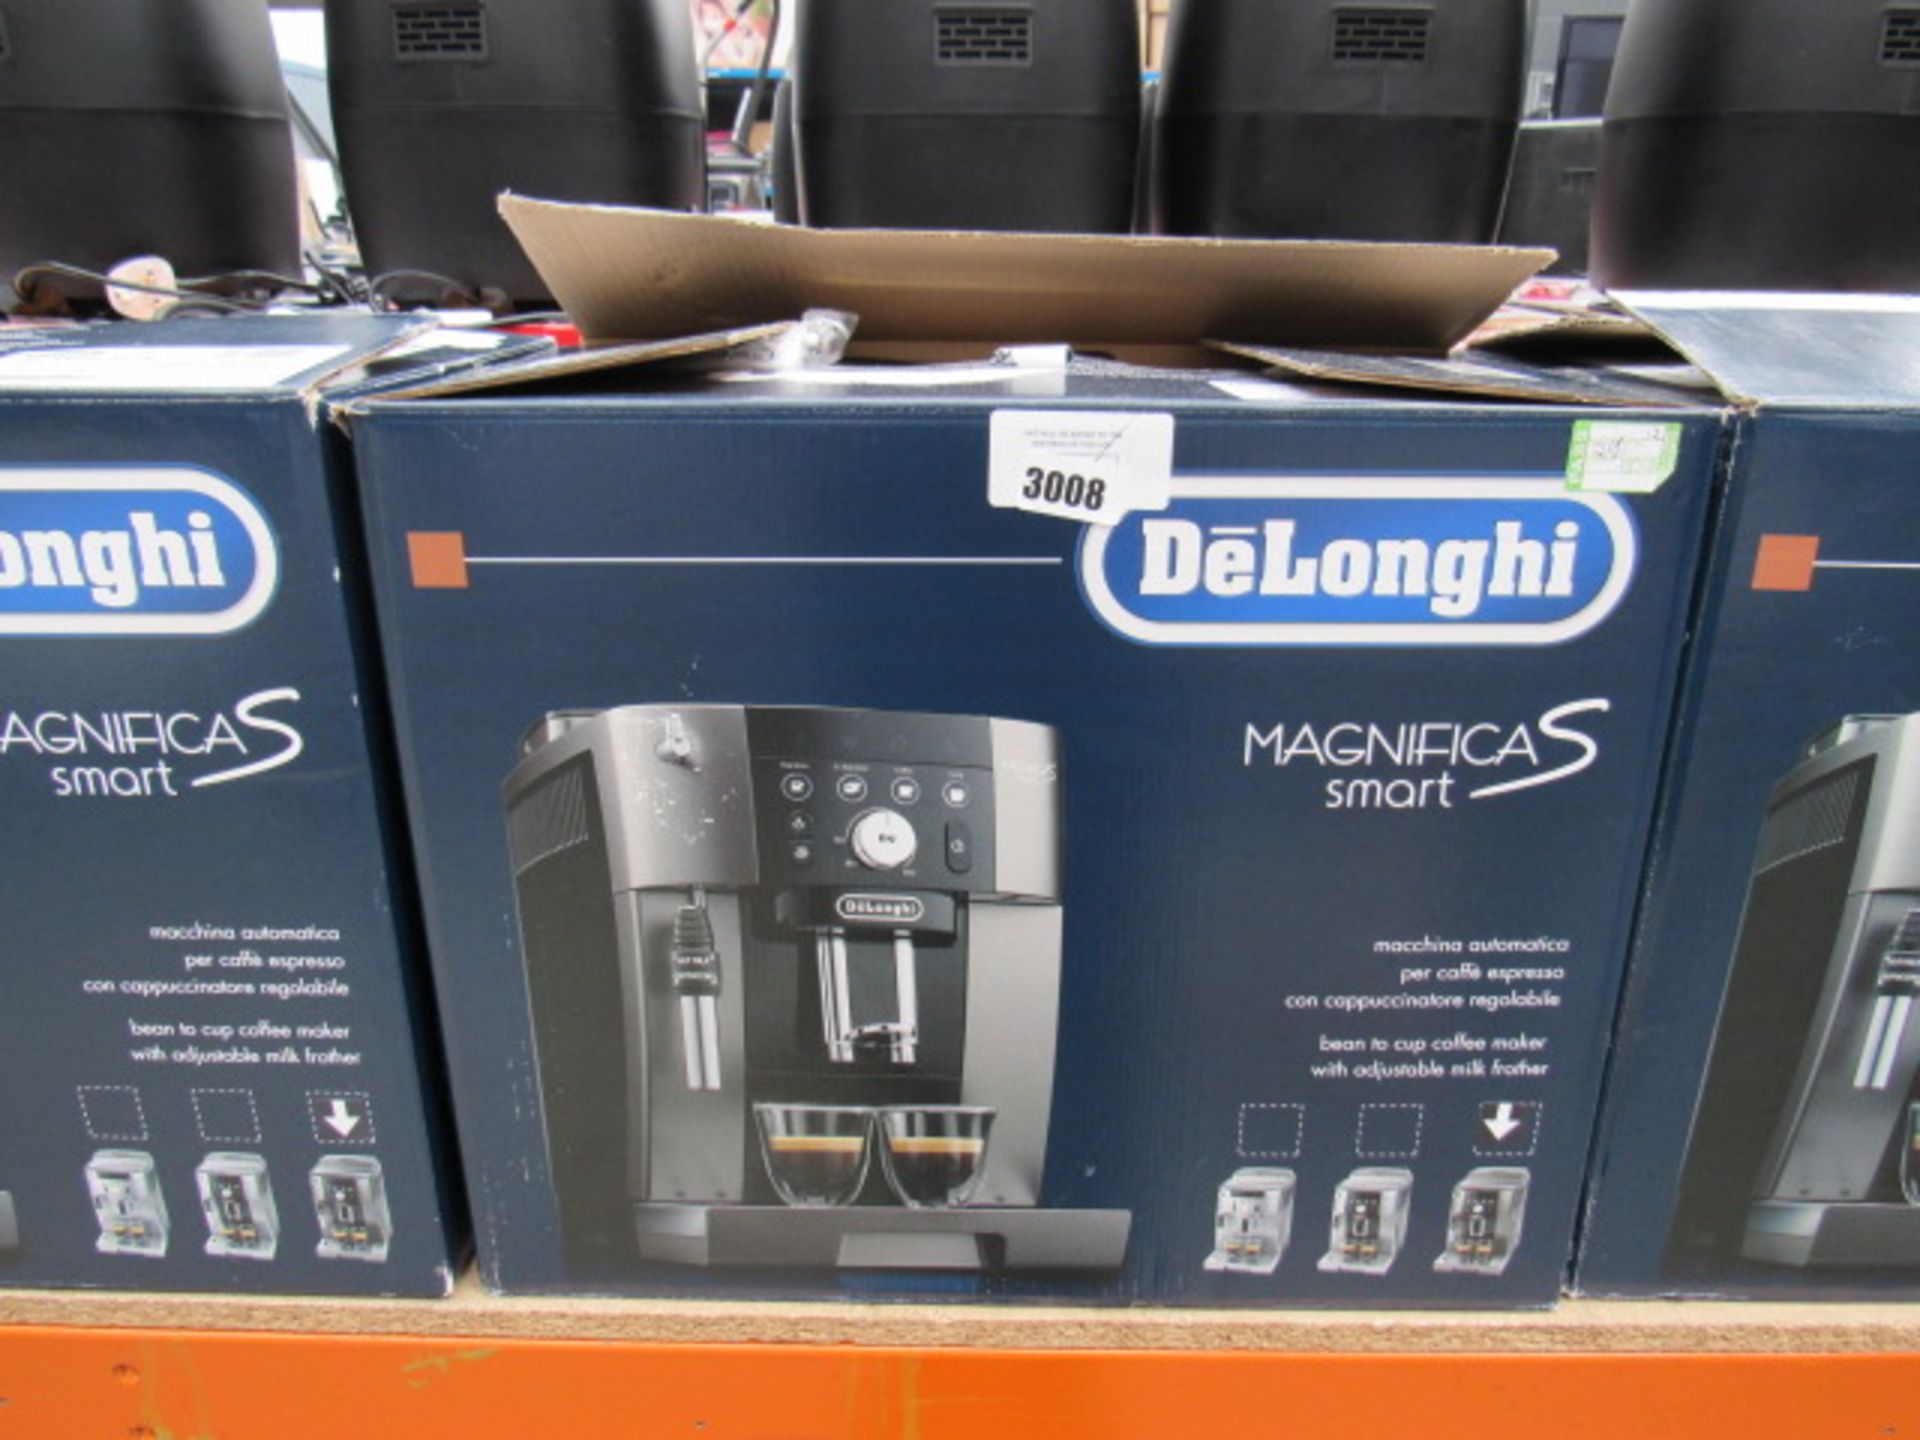 (12) Delonghi Magnifica S Smart coffee machine